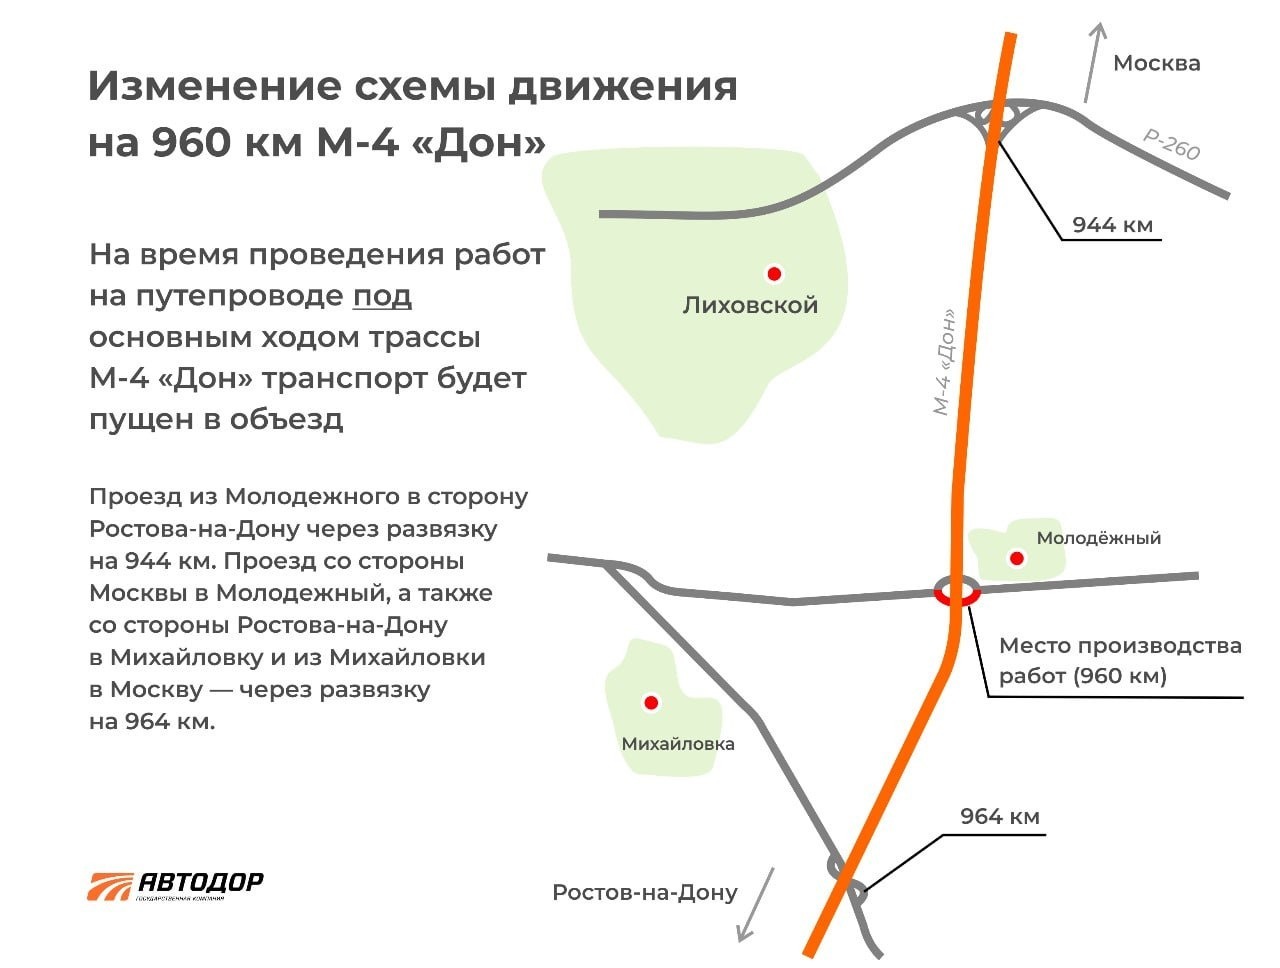 Тем, кто едет из Москвы в направлении Ростова-на-Дону для разворота предусмотрена транспортная развязка на 964-м километре.